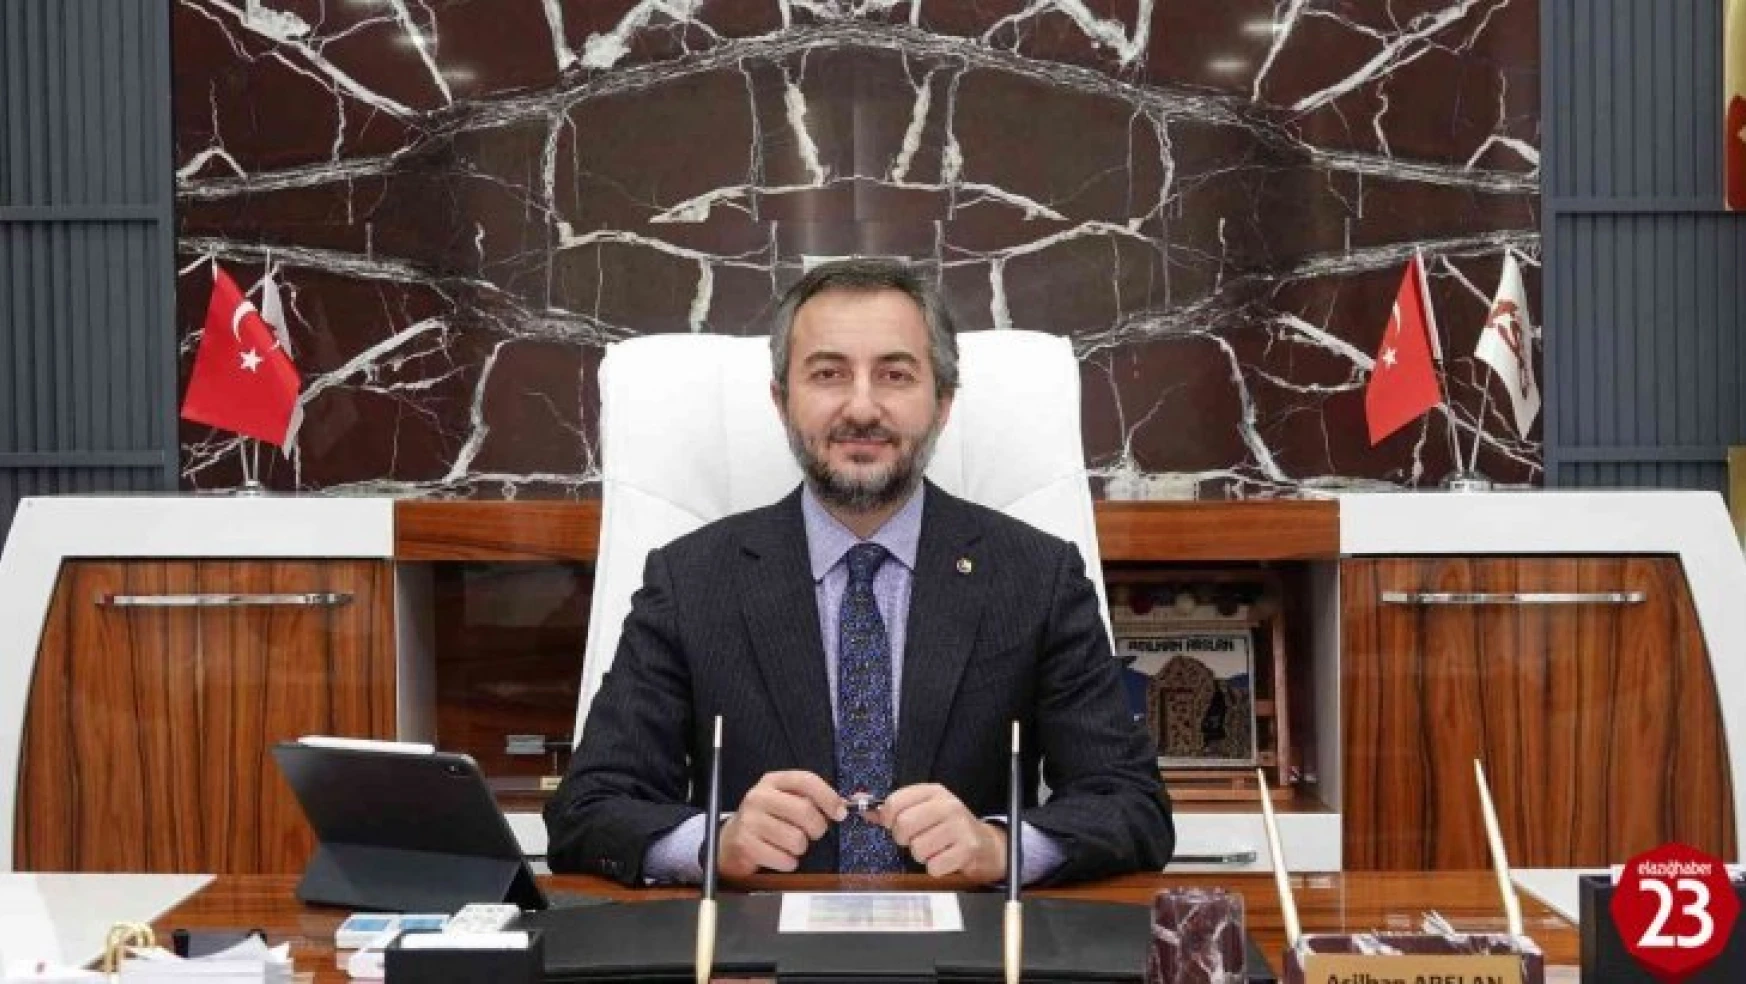 Başkan Arslan: 'Asgari ücret hem çalışanları hem de işvereni mağdur etmeden iyileştirilmelidir'